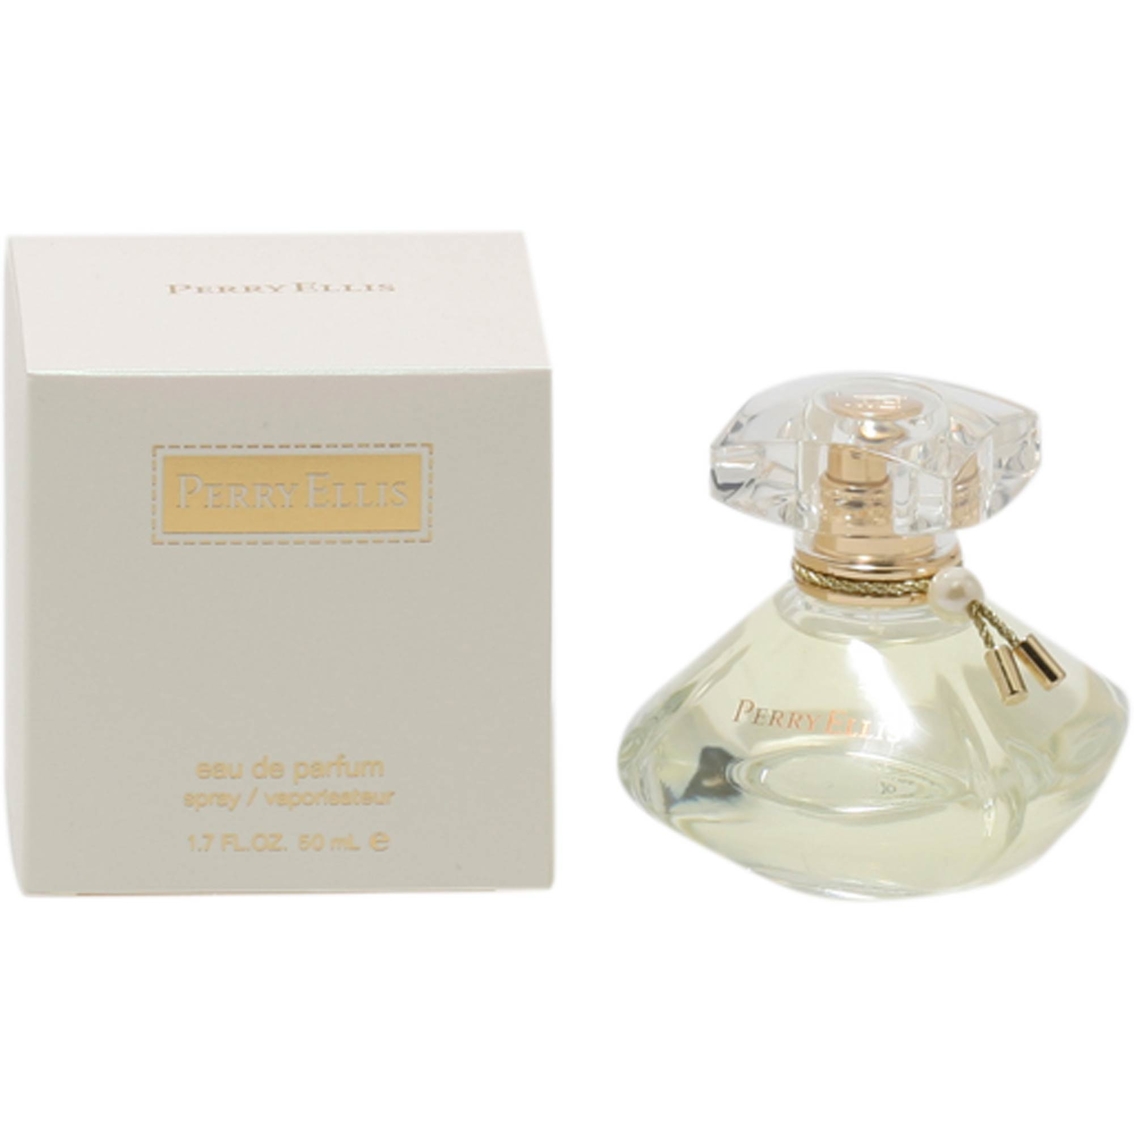 Perry Ellis For Women Eau De Parfum Spray 1.7 Oz. | Women's Fragrances ...